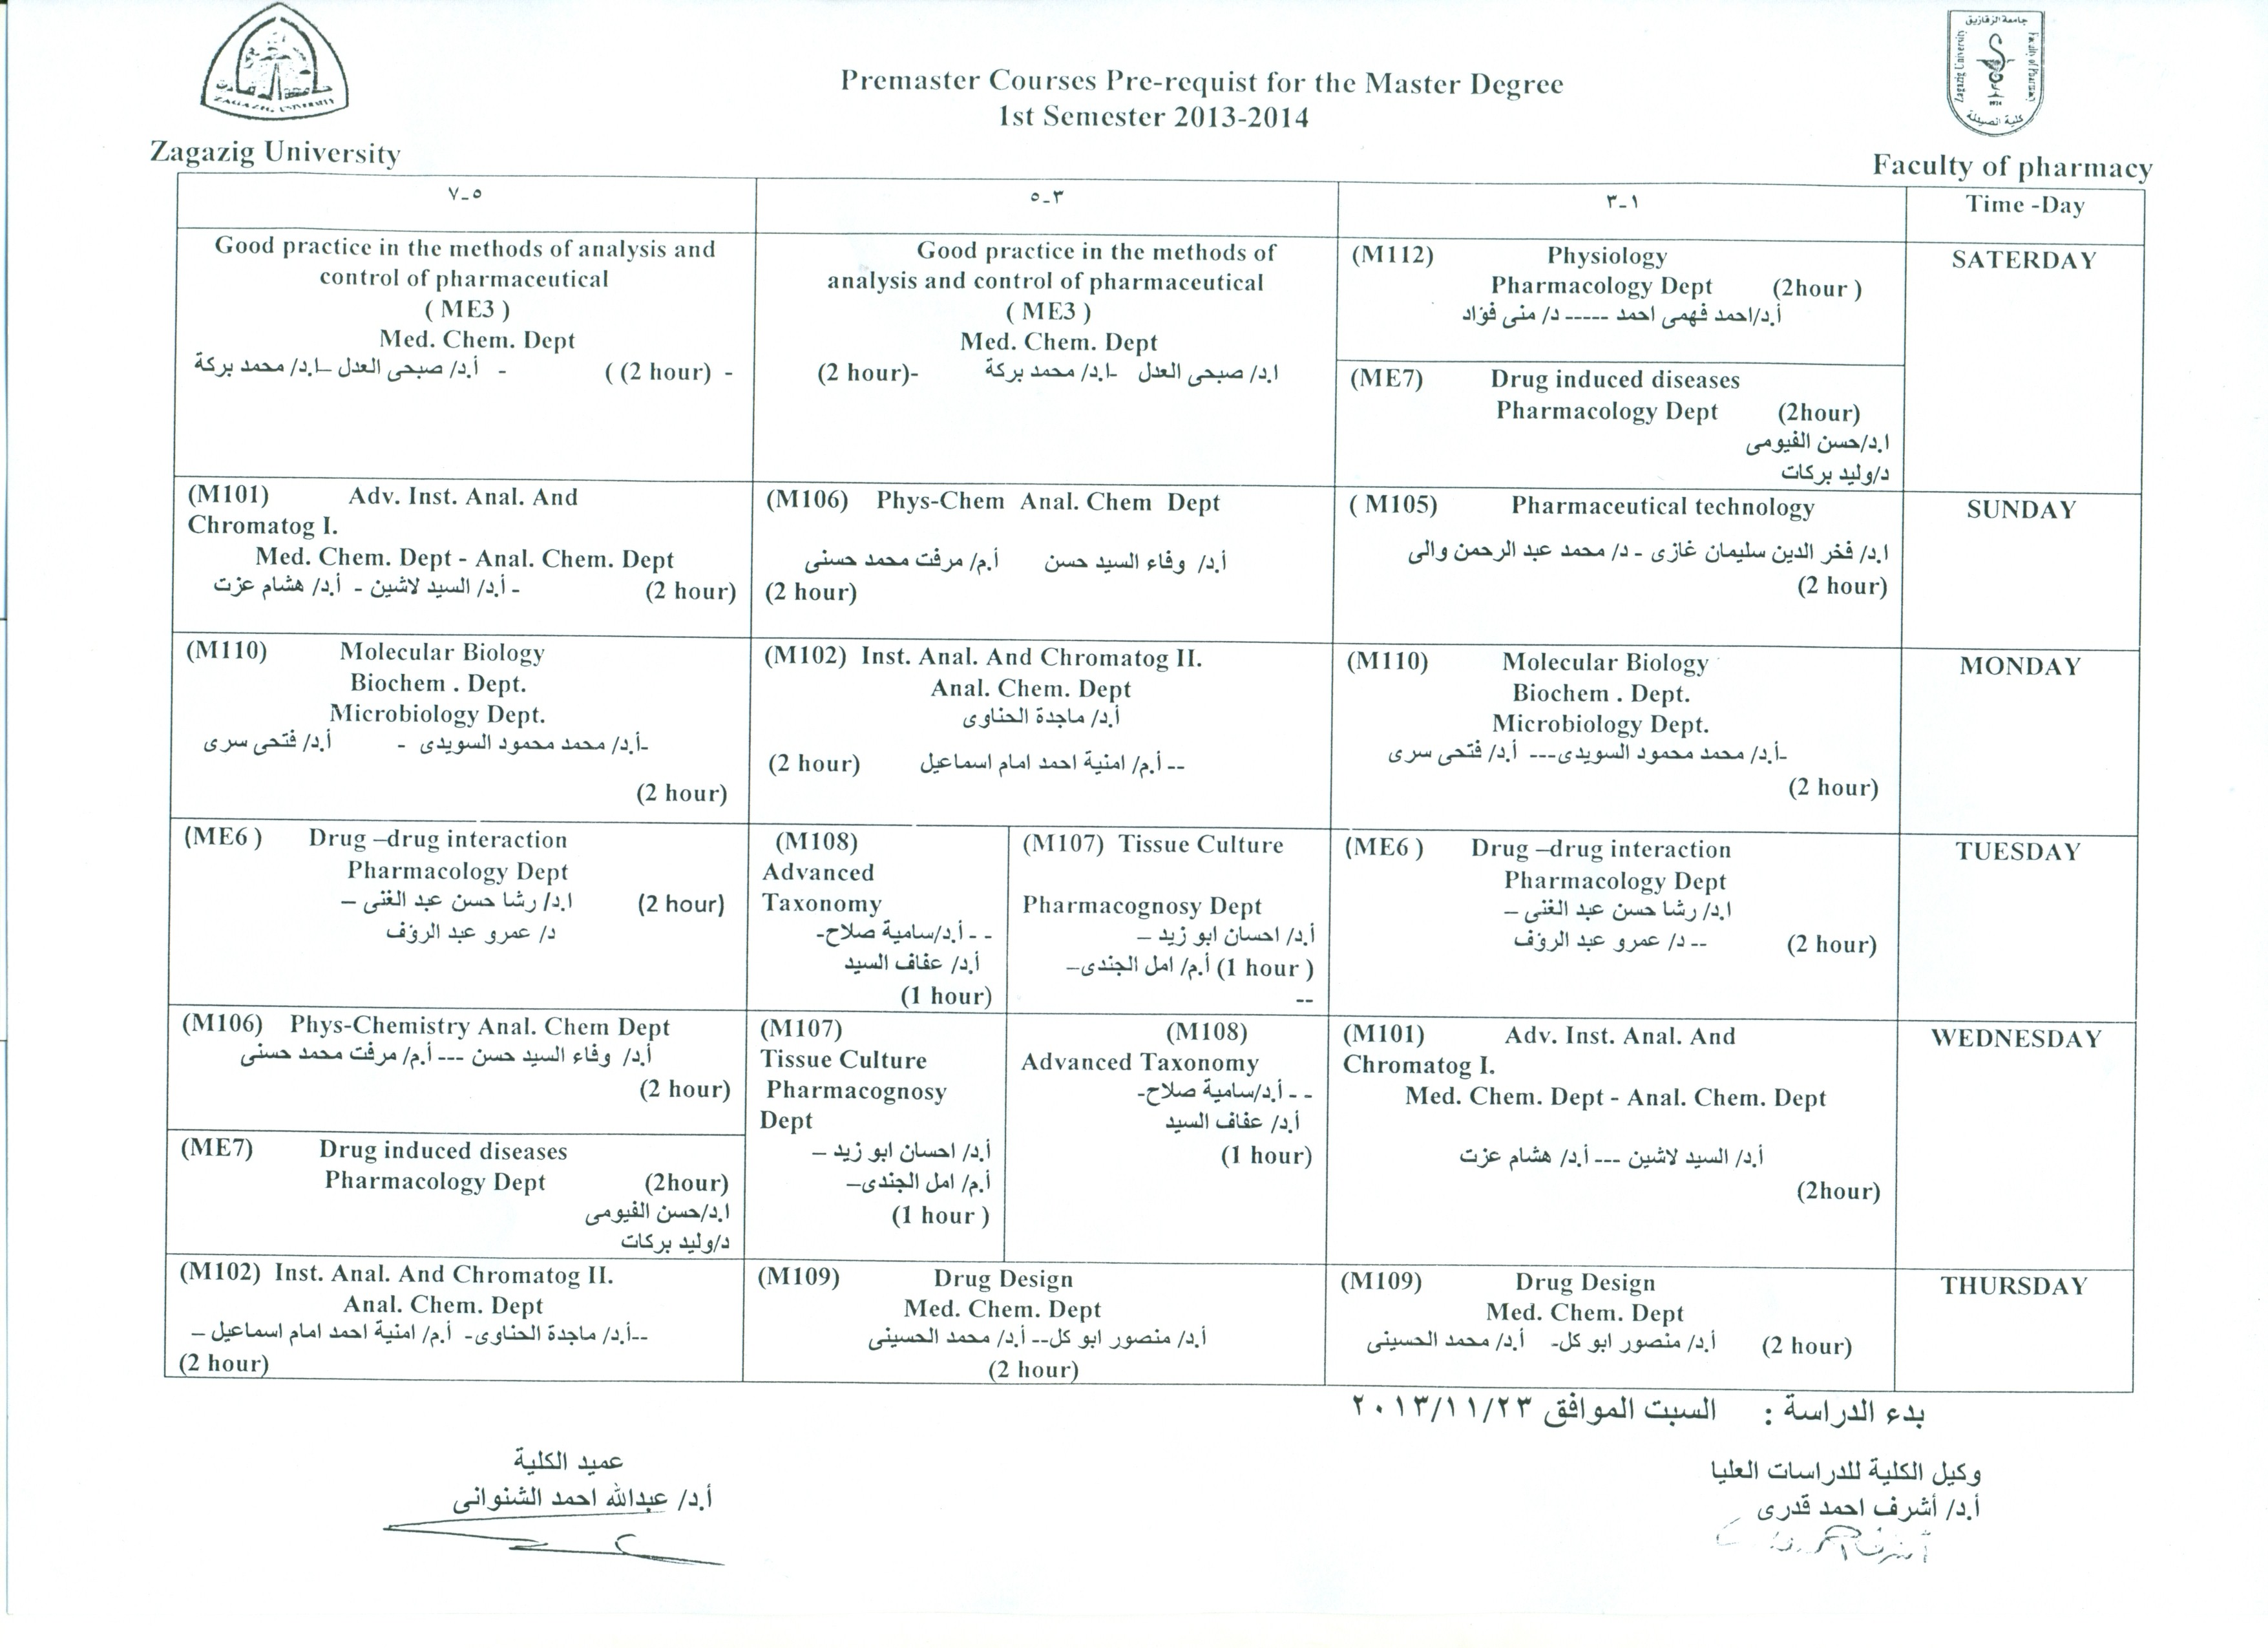 جدول تمهيدى ماجستير الفصل الدراسى الأول للعام الجامعى 2013/2014